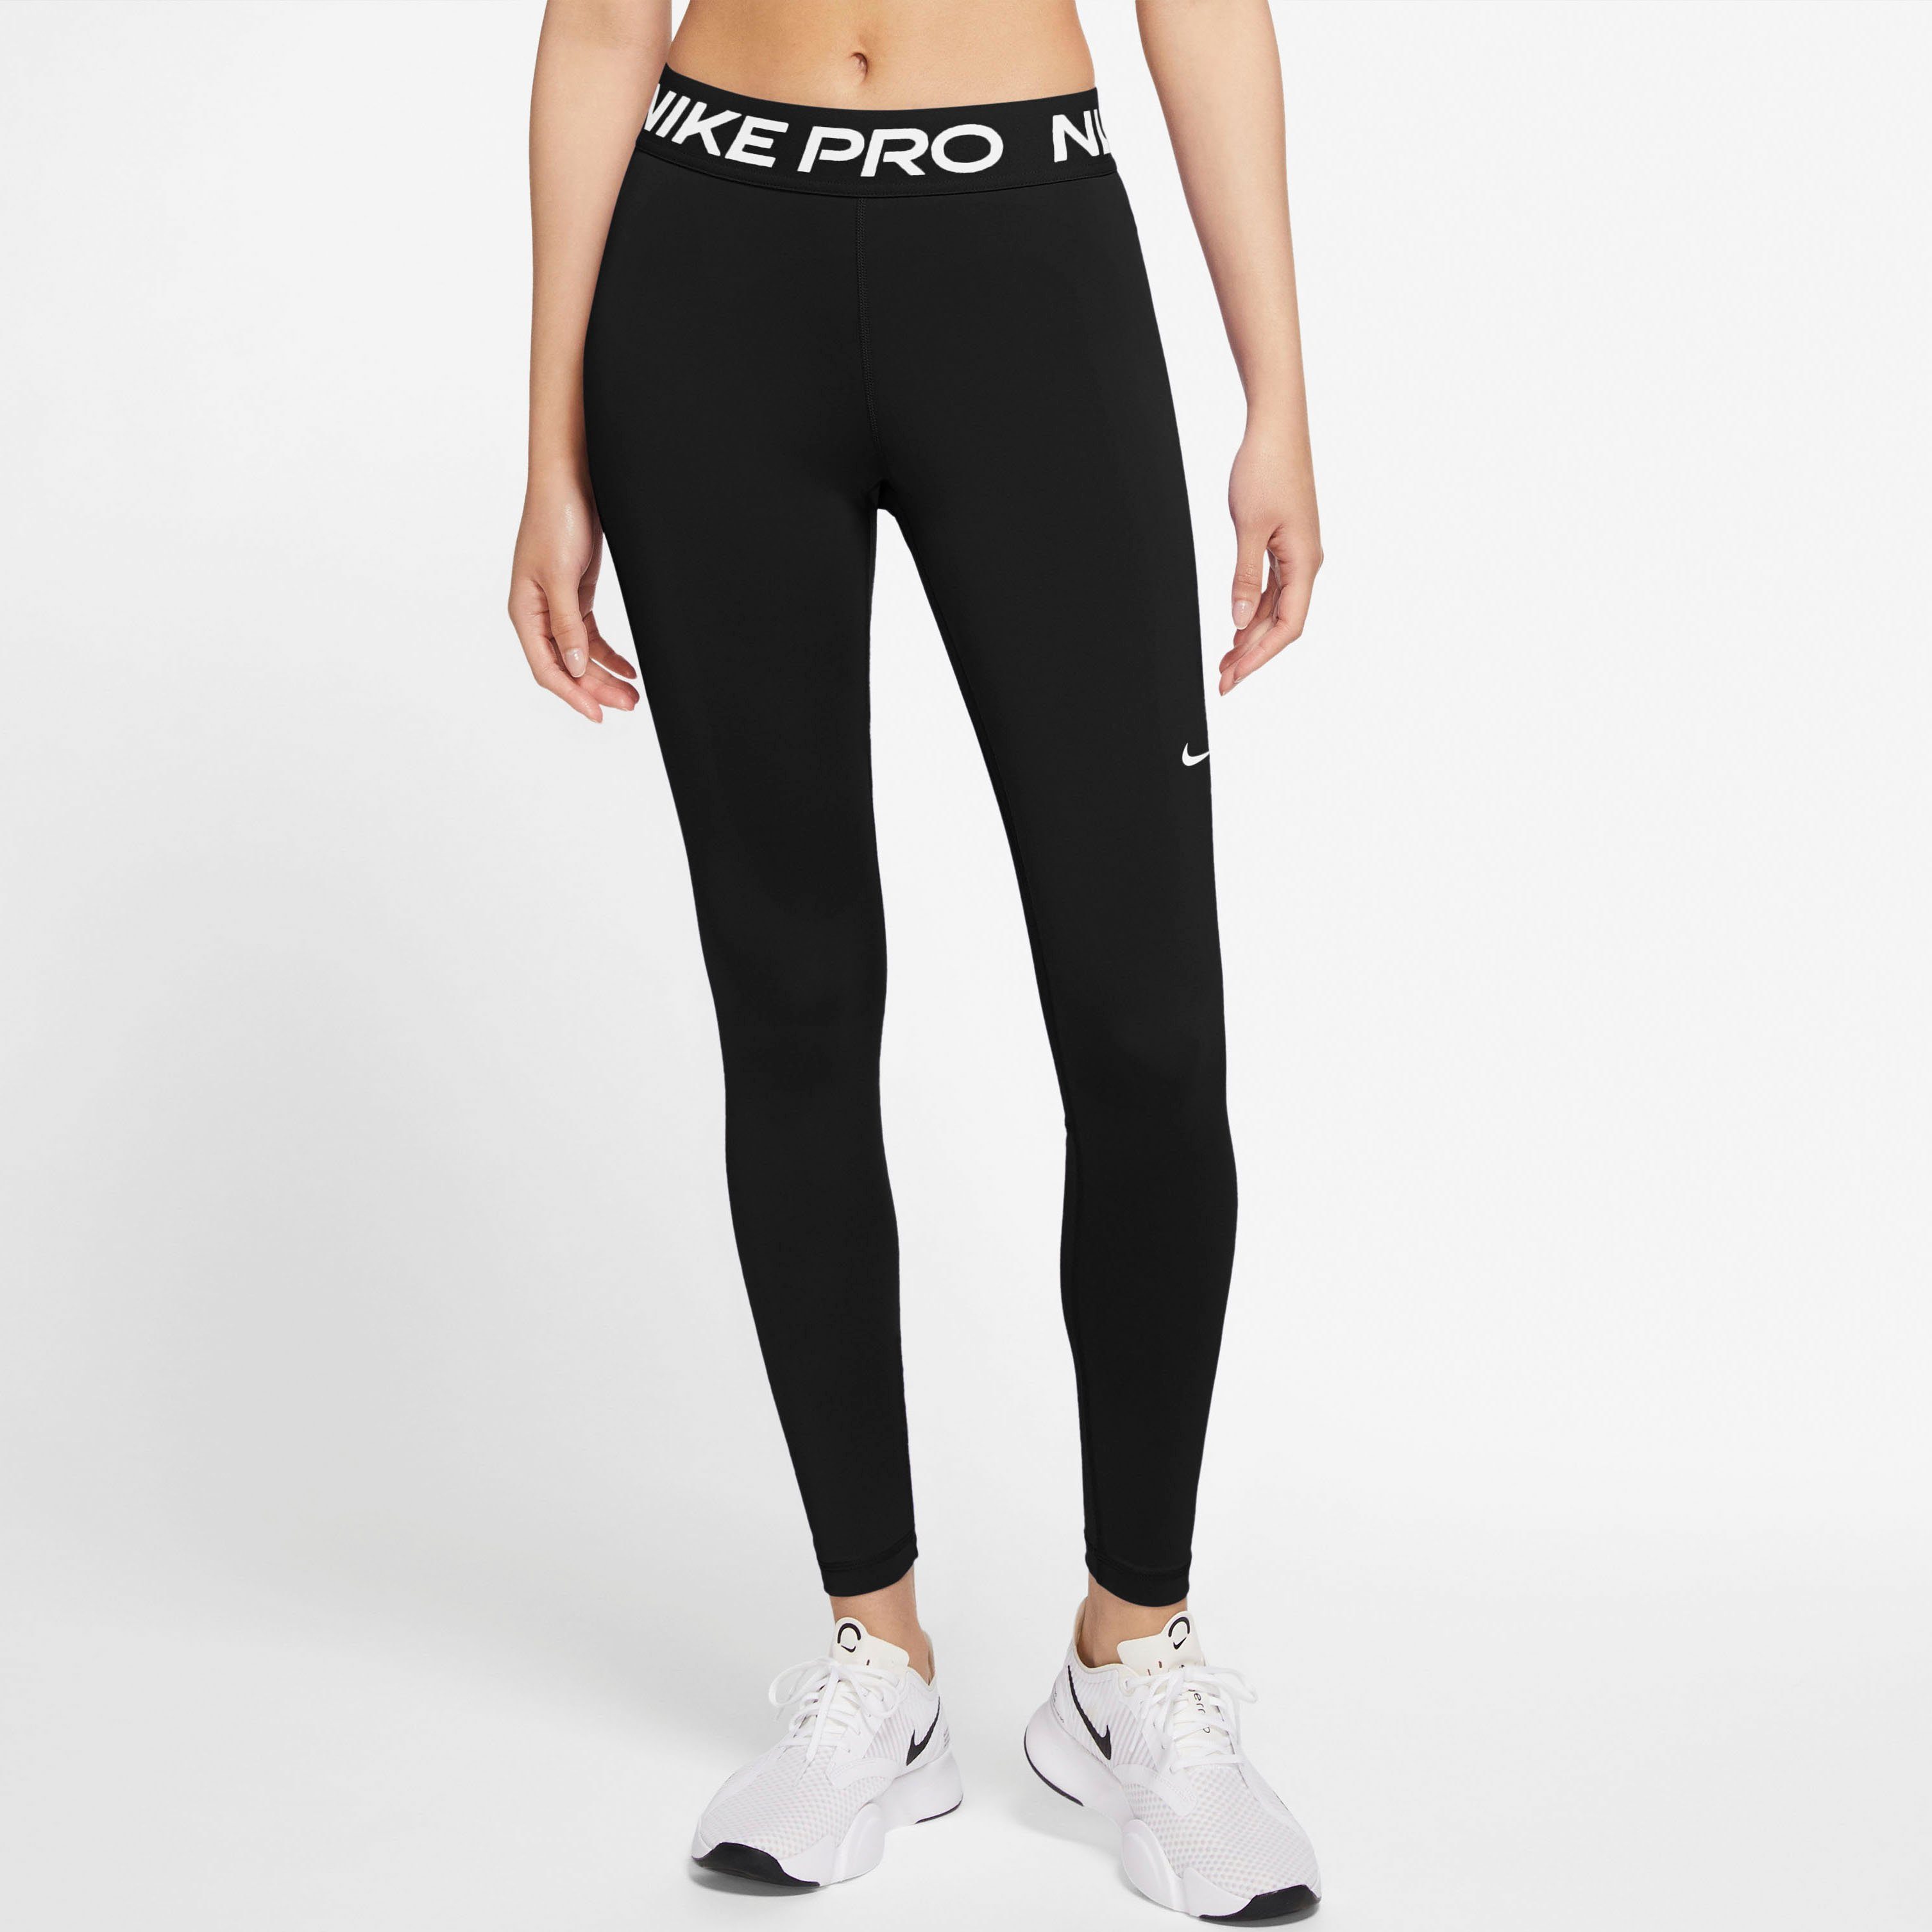 Schwarze Nike Damen Sporthosen online kaufen | OTTO